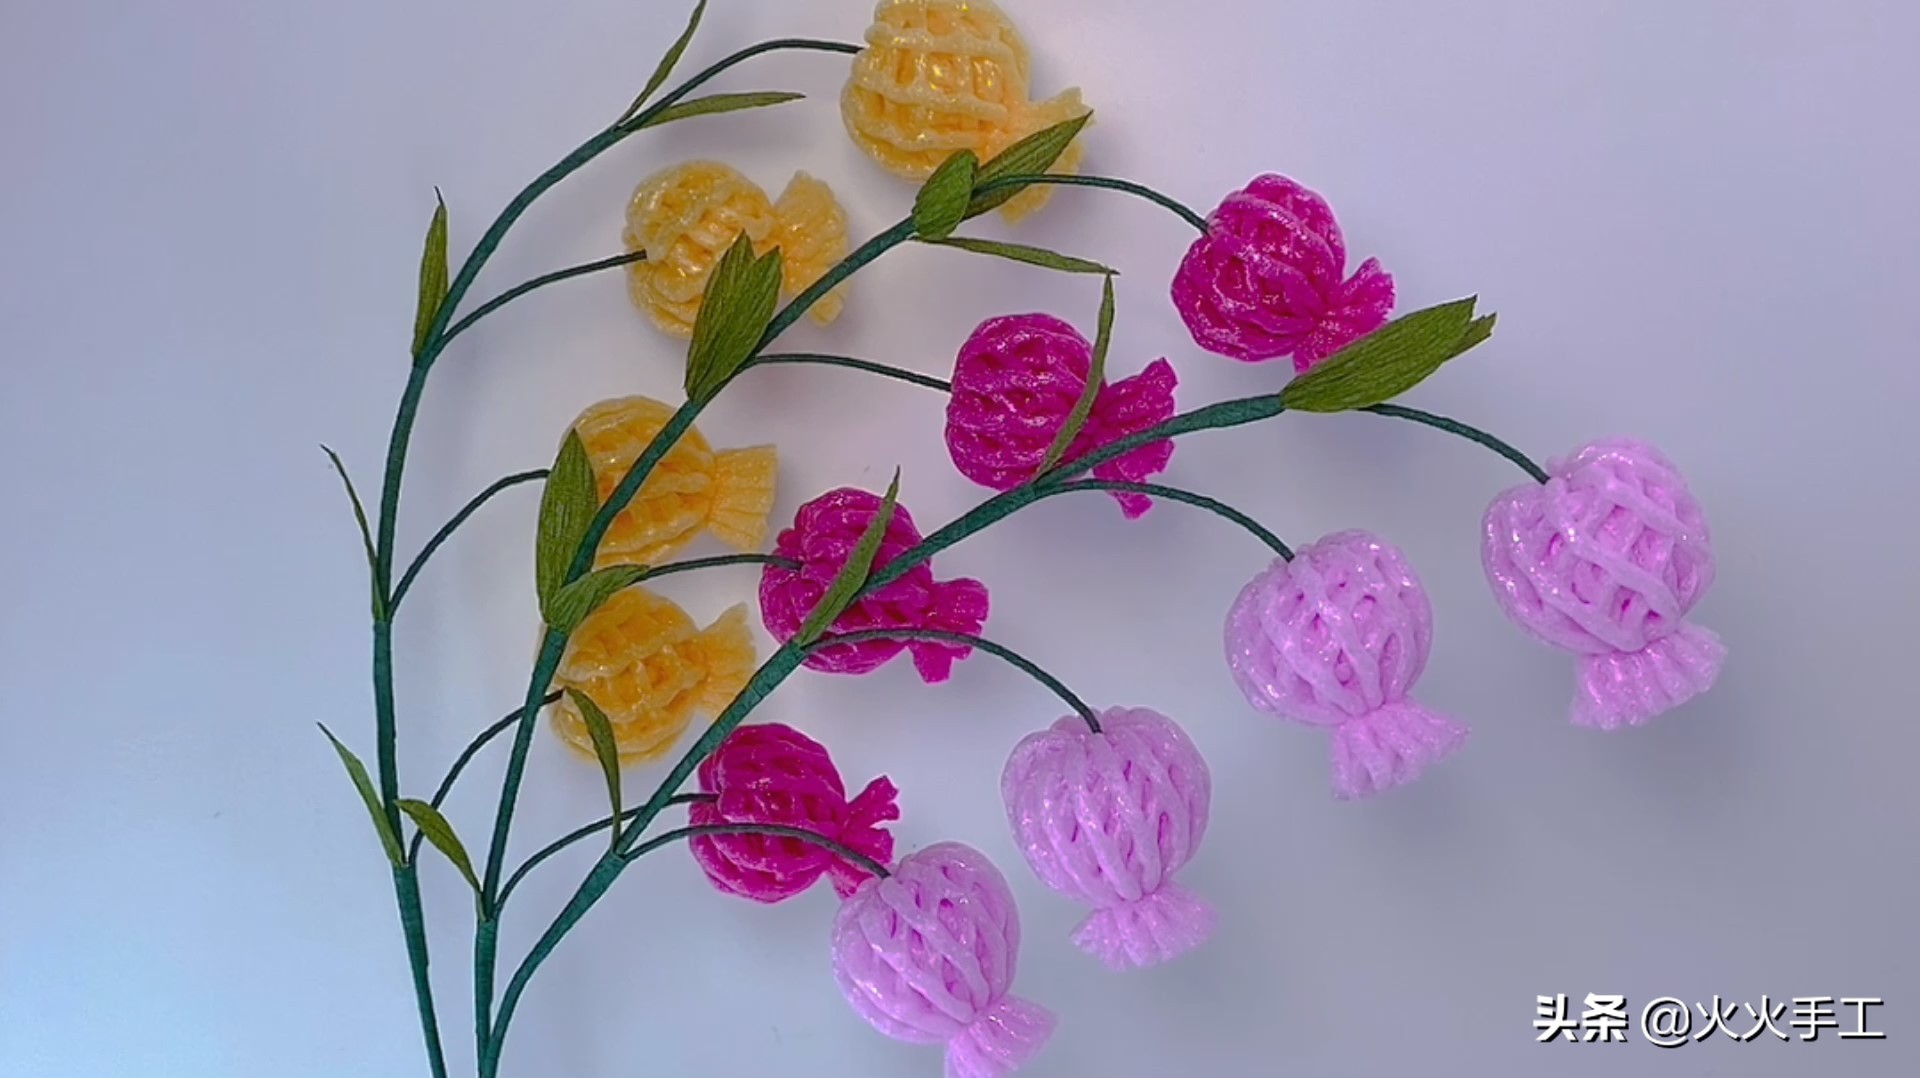 水果泡沫网袋制作花朵图片